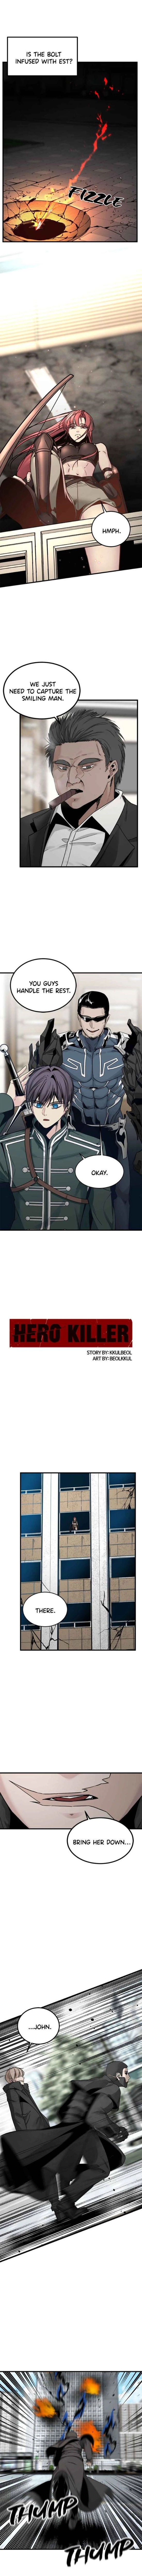 hero_killer_16_3